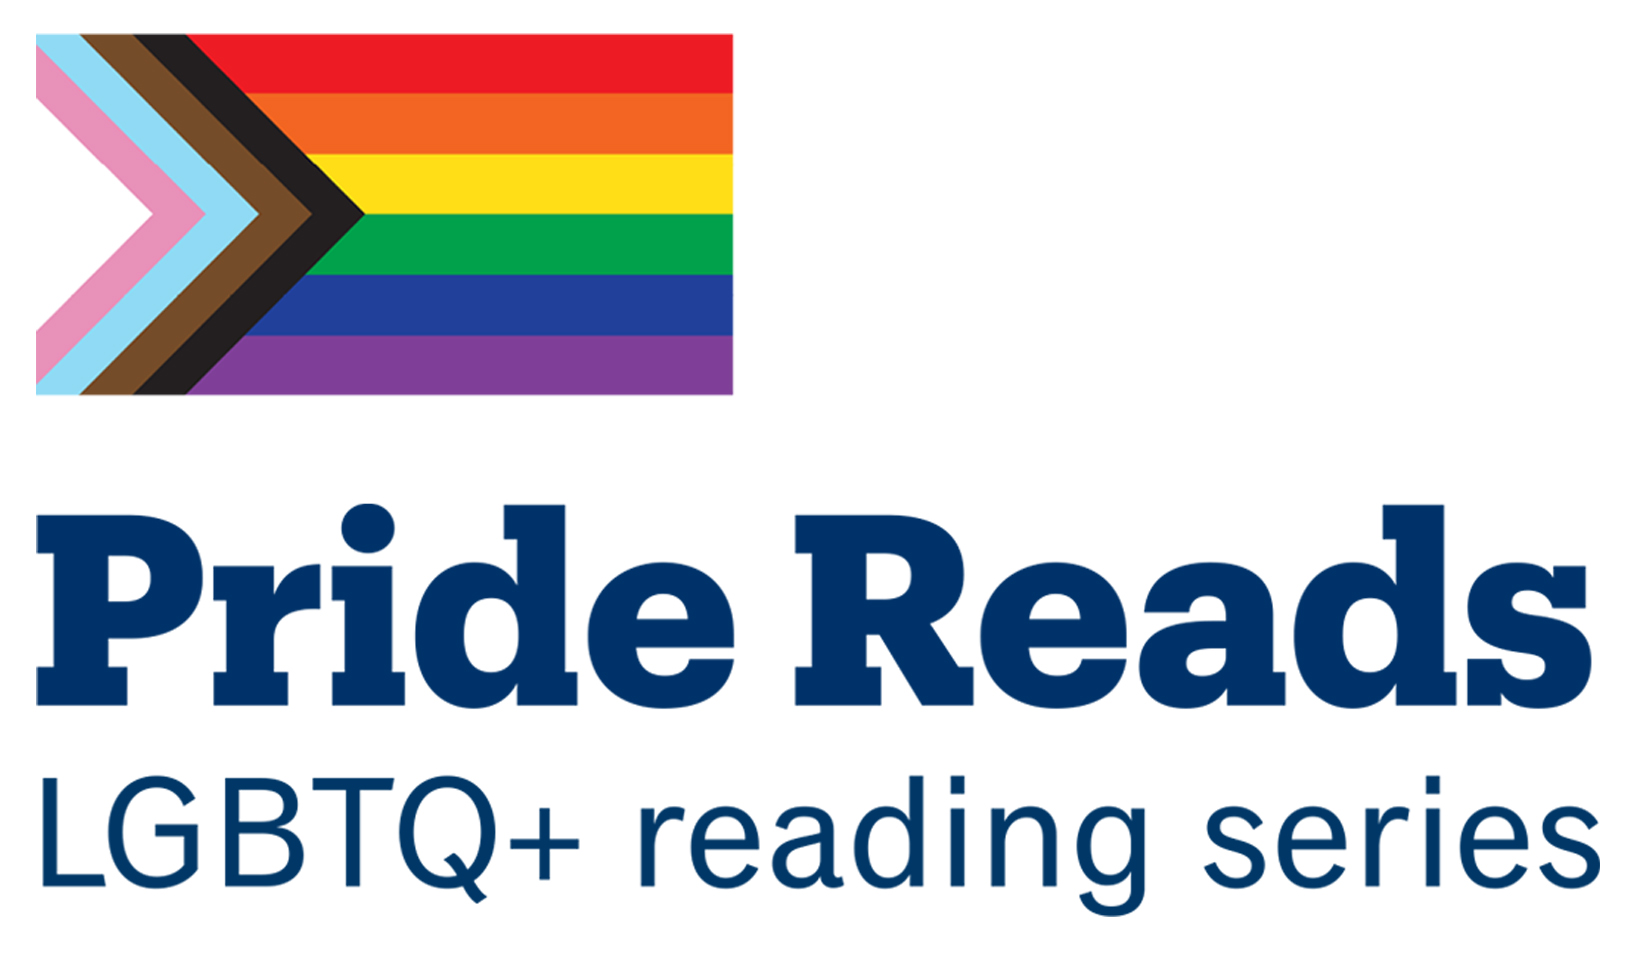 Pride Reads: a LGBTQ+ literary initiative